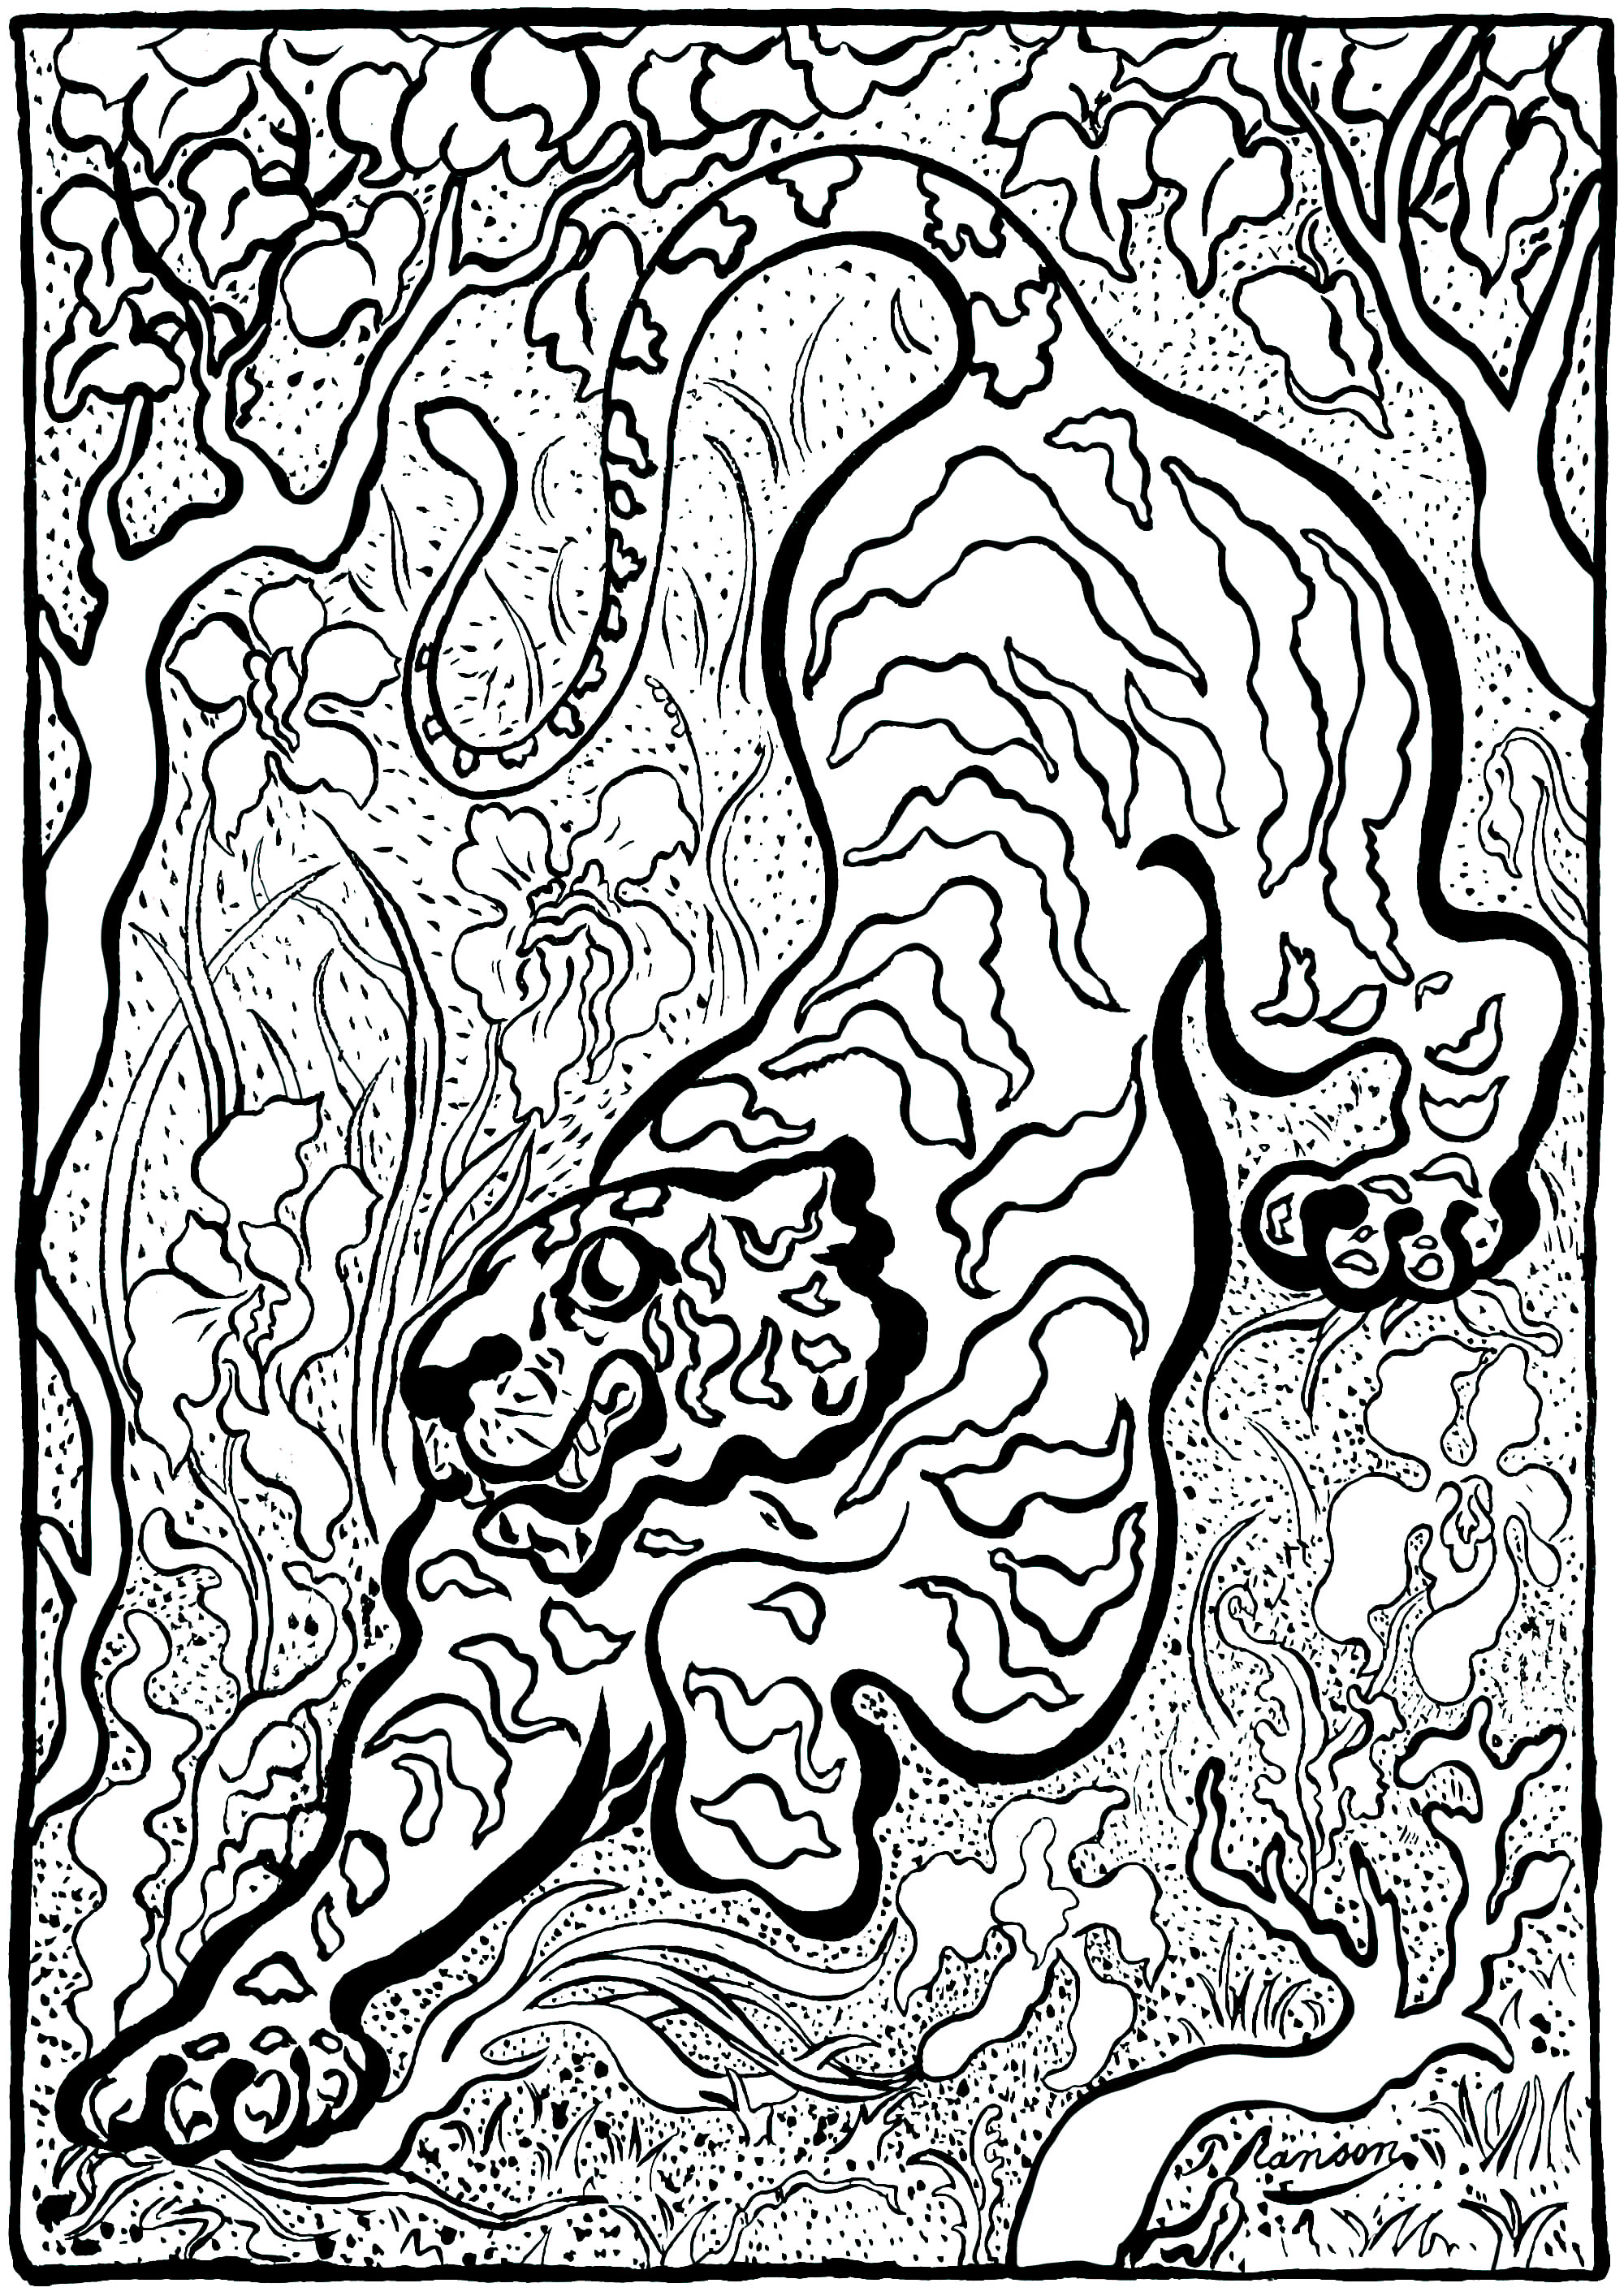 Ausmalbild nach Paul-Élie Ransons Kunstwerk 'Tiger im Dschungel' (1883) - Version 1 (einfach). Paul-Élie Ranson, der zur Gruppe 'Les Nabis' gehört, hat einen originellen Stil mit symbolistischen und esoterischen Anklängen entwickelt.Die Nabis-Bewegung, die in der Geschichte des Postimpressionismus verankert ist, aber mit dem Impressionismus bricht, tritt für eine Rückkehr zur Fantasie und Subjektivität ein.